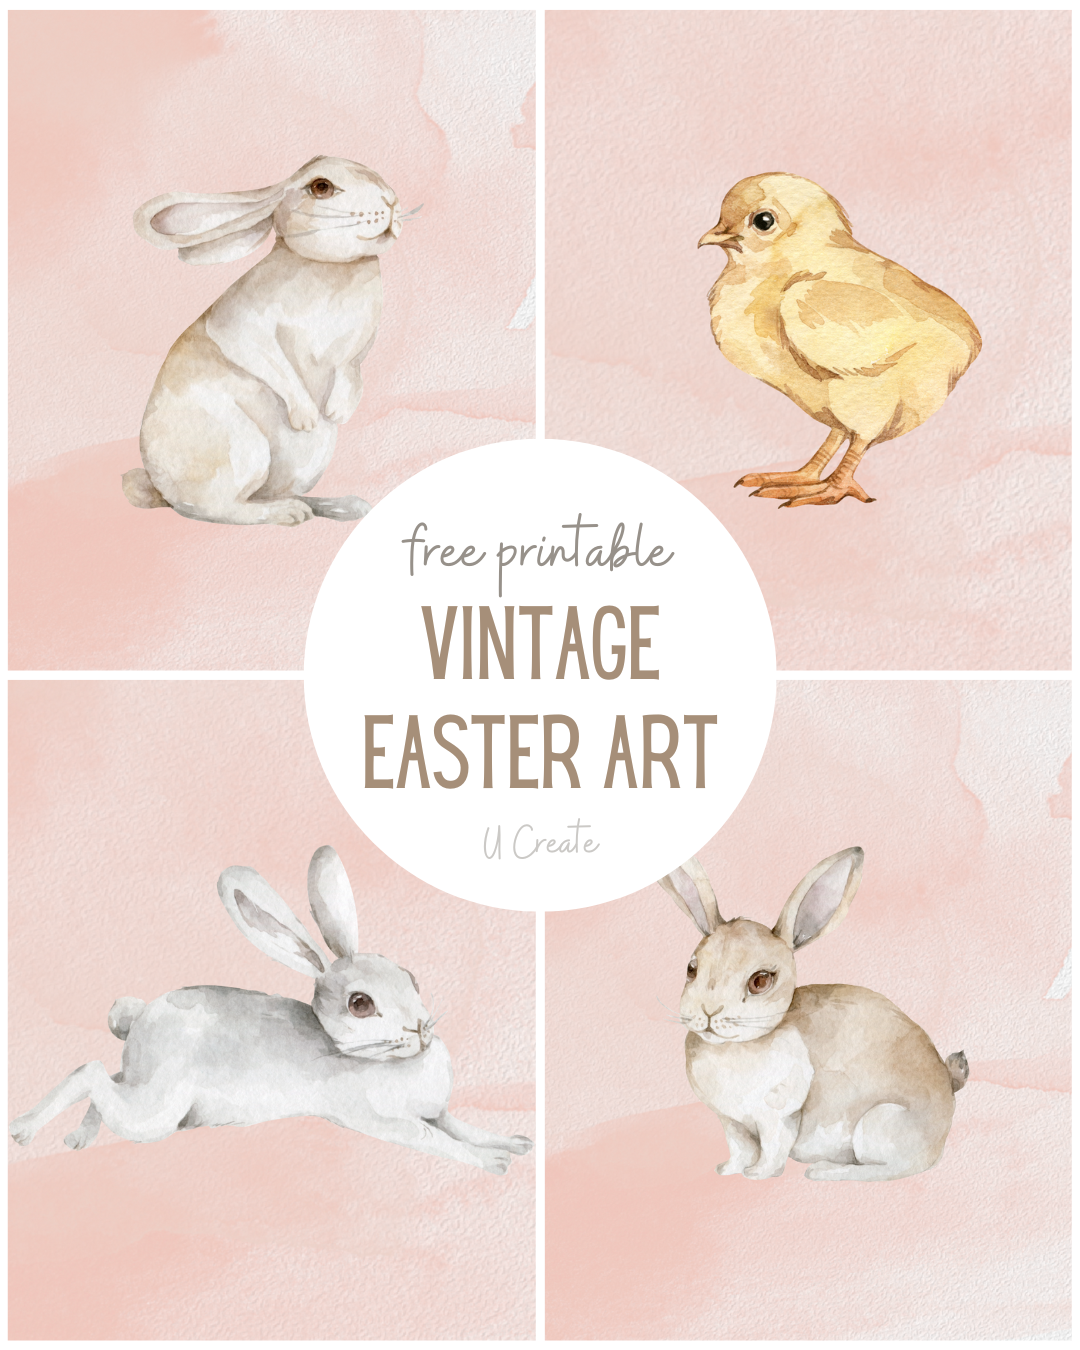 Vintage Easter Art Prints - U Create